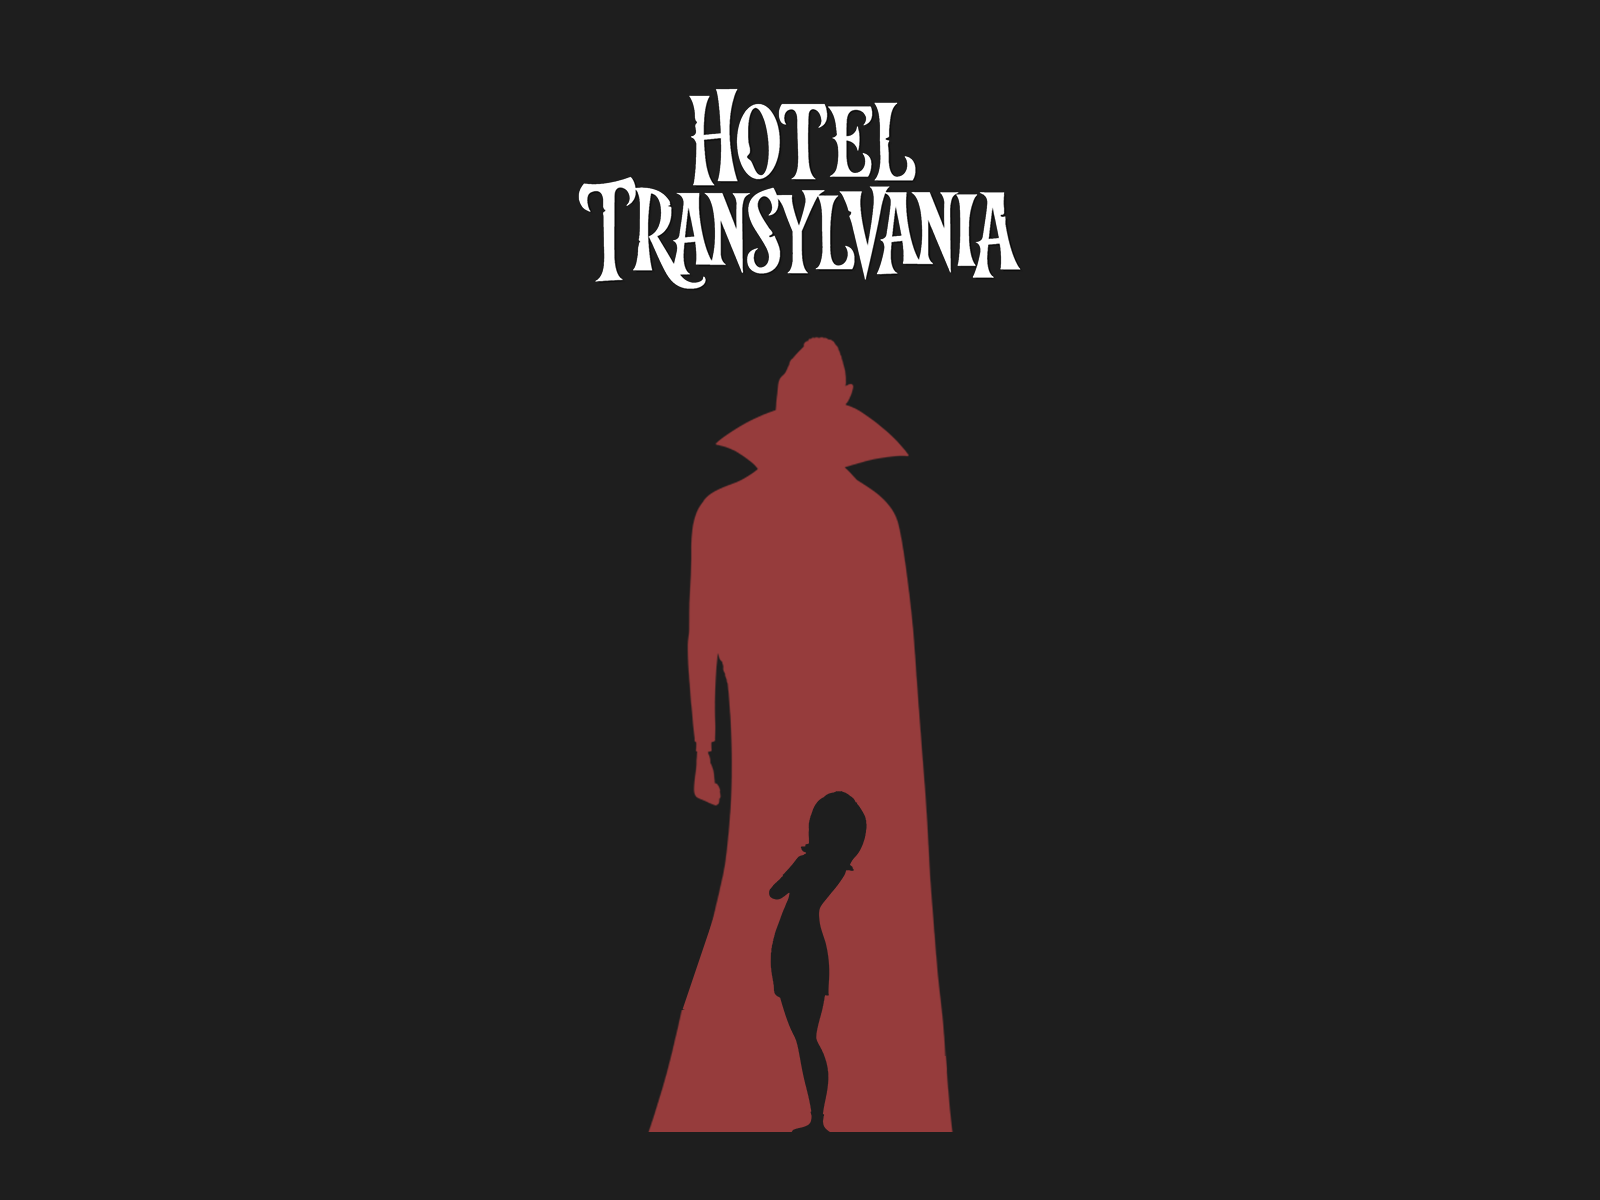 Hotel Transylvania Quotes. QuotesGram